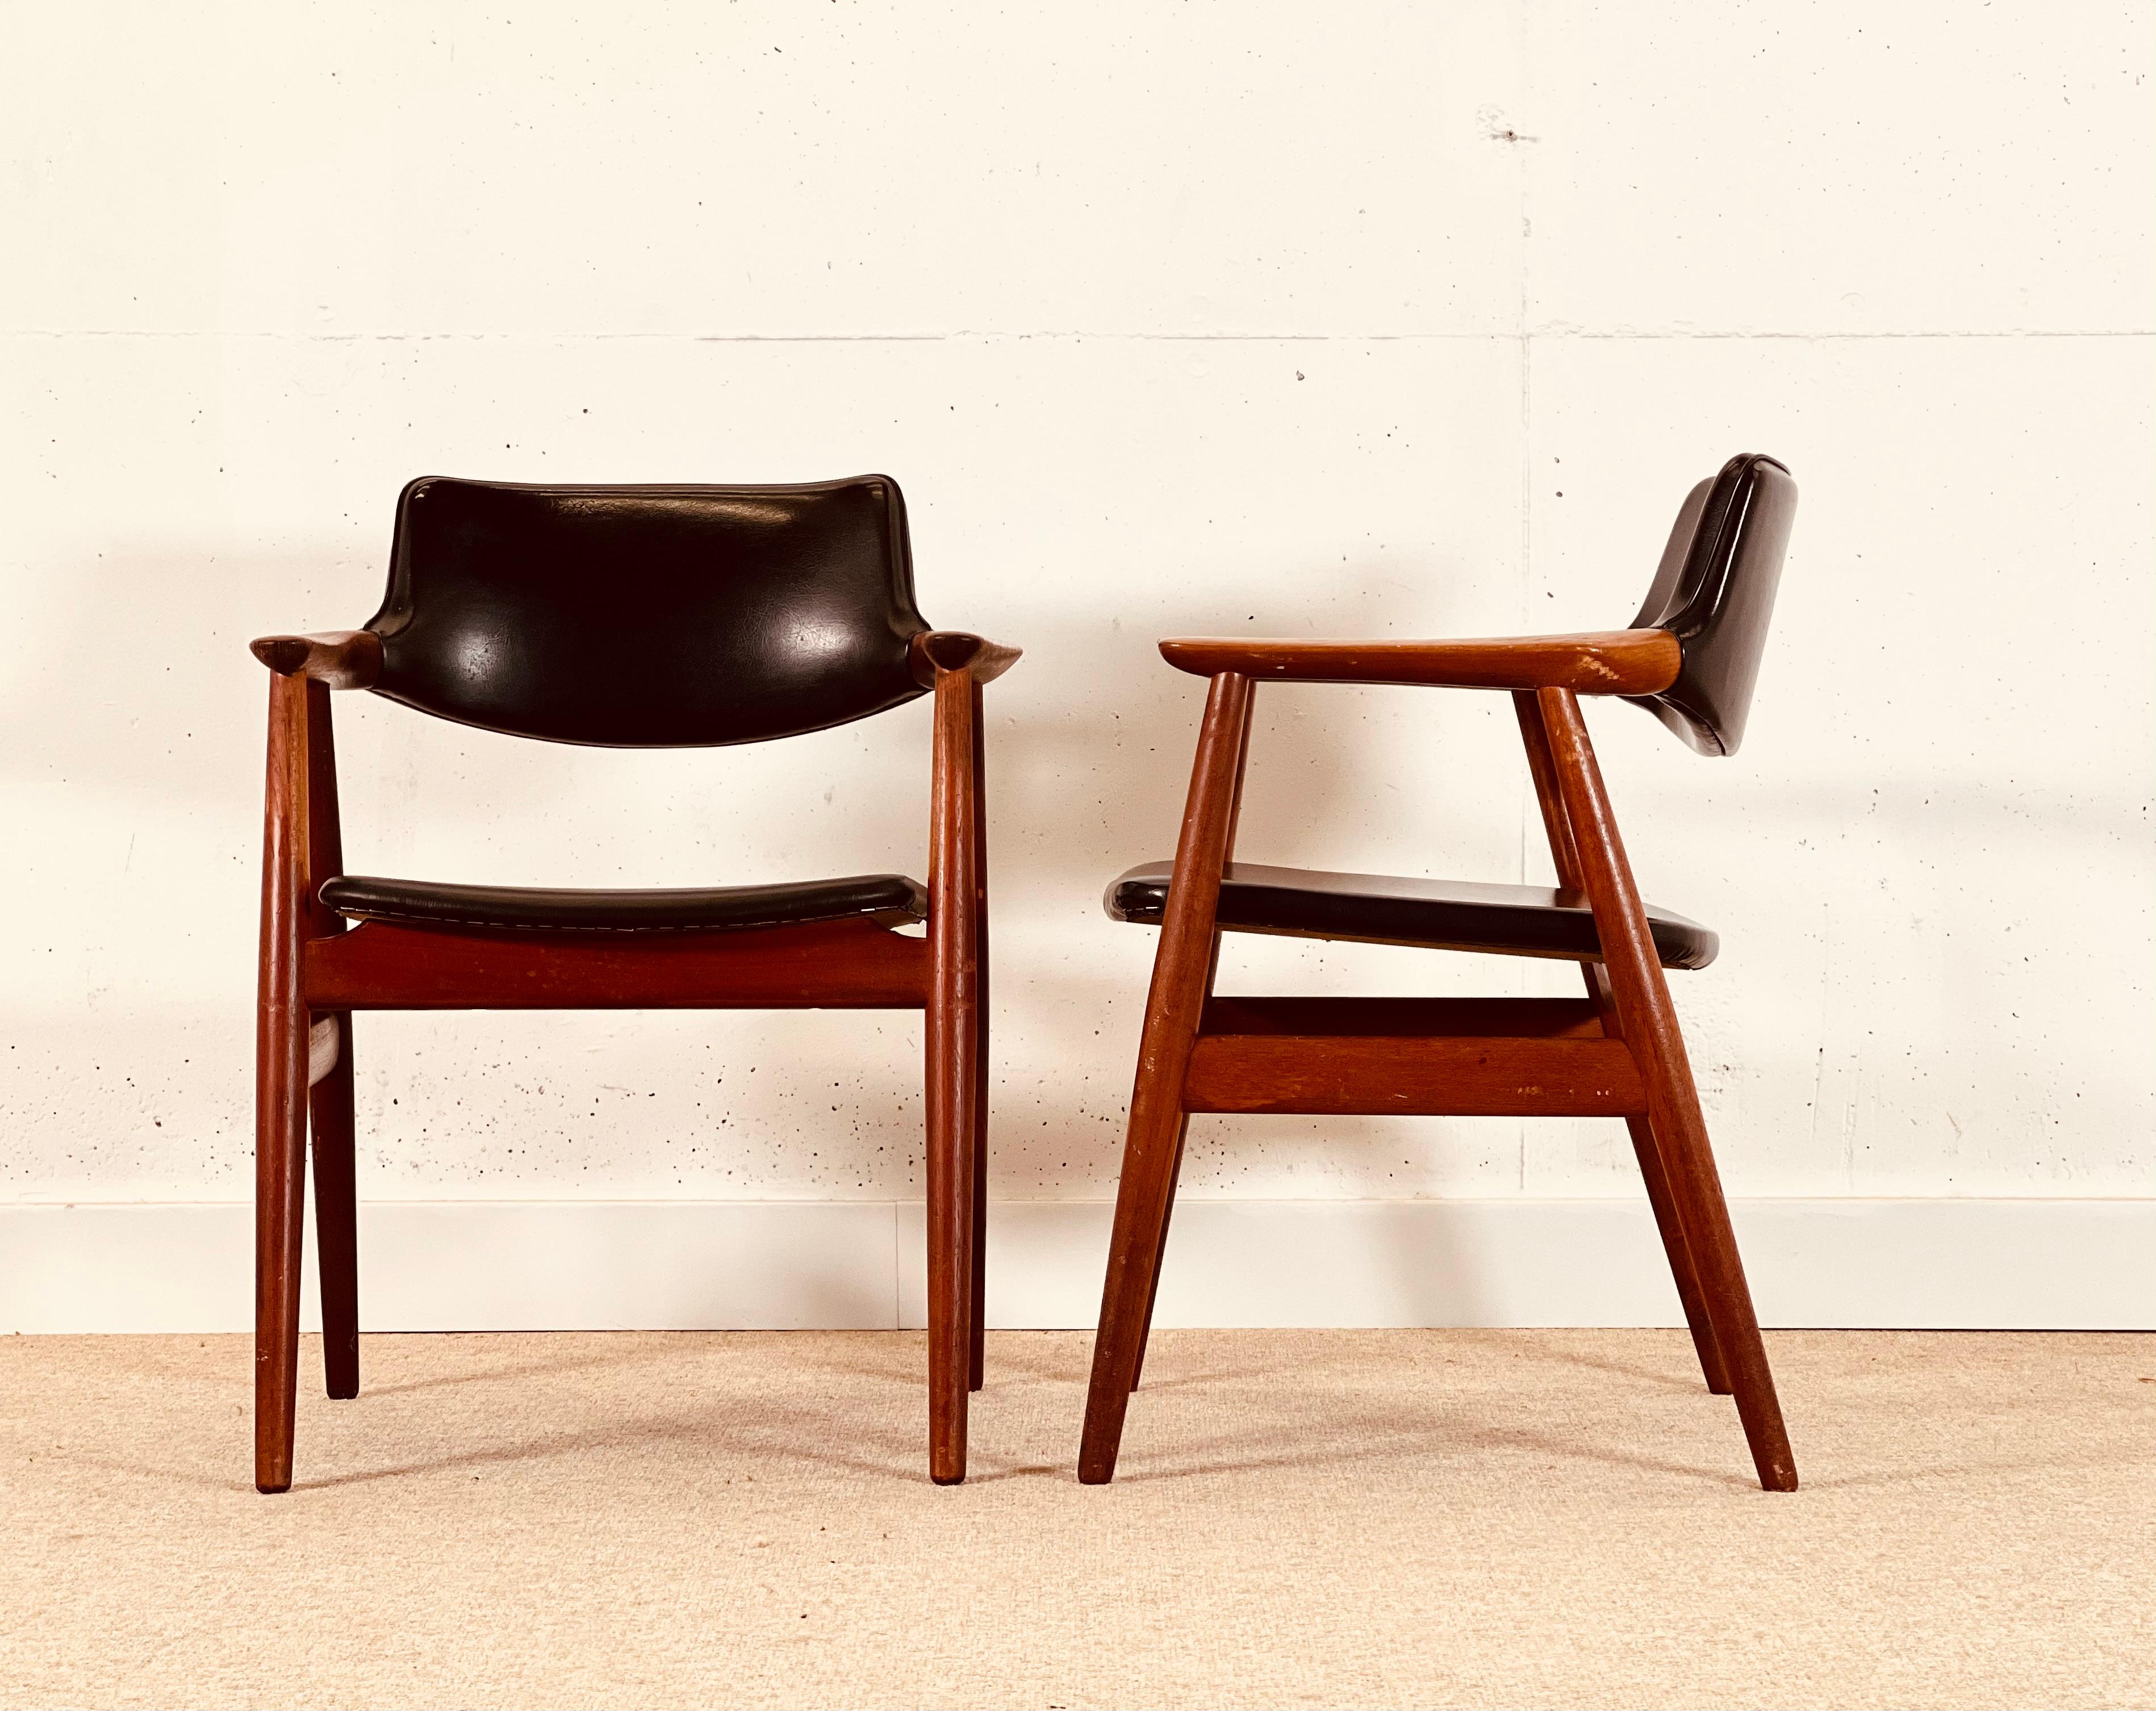 vend Age Eriksen entwarf in den 60er Jahren in Dänemark einen Satz von vier Stühlen. Es ist der Esszimmerstuhl Modell Gm11.
Die Stühle sind aus massivem Teakholz und haben ein schönes Design, bei dem die Armlehne in der Luft hängt. Die Stühle wurden